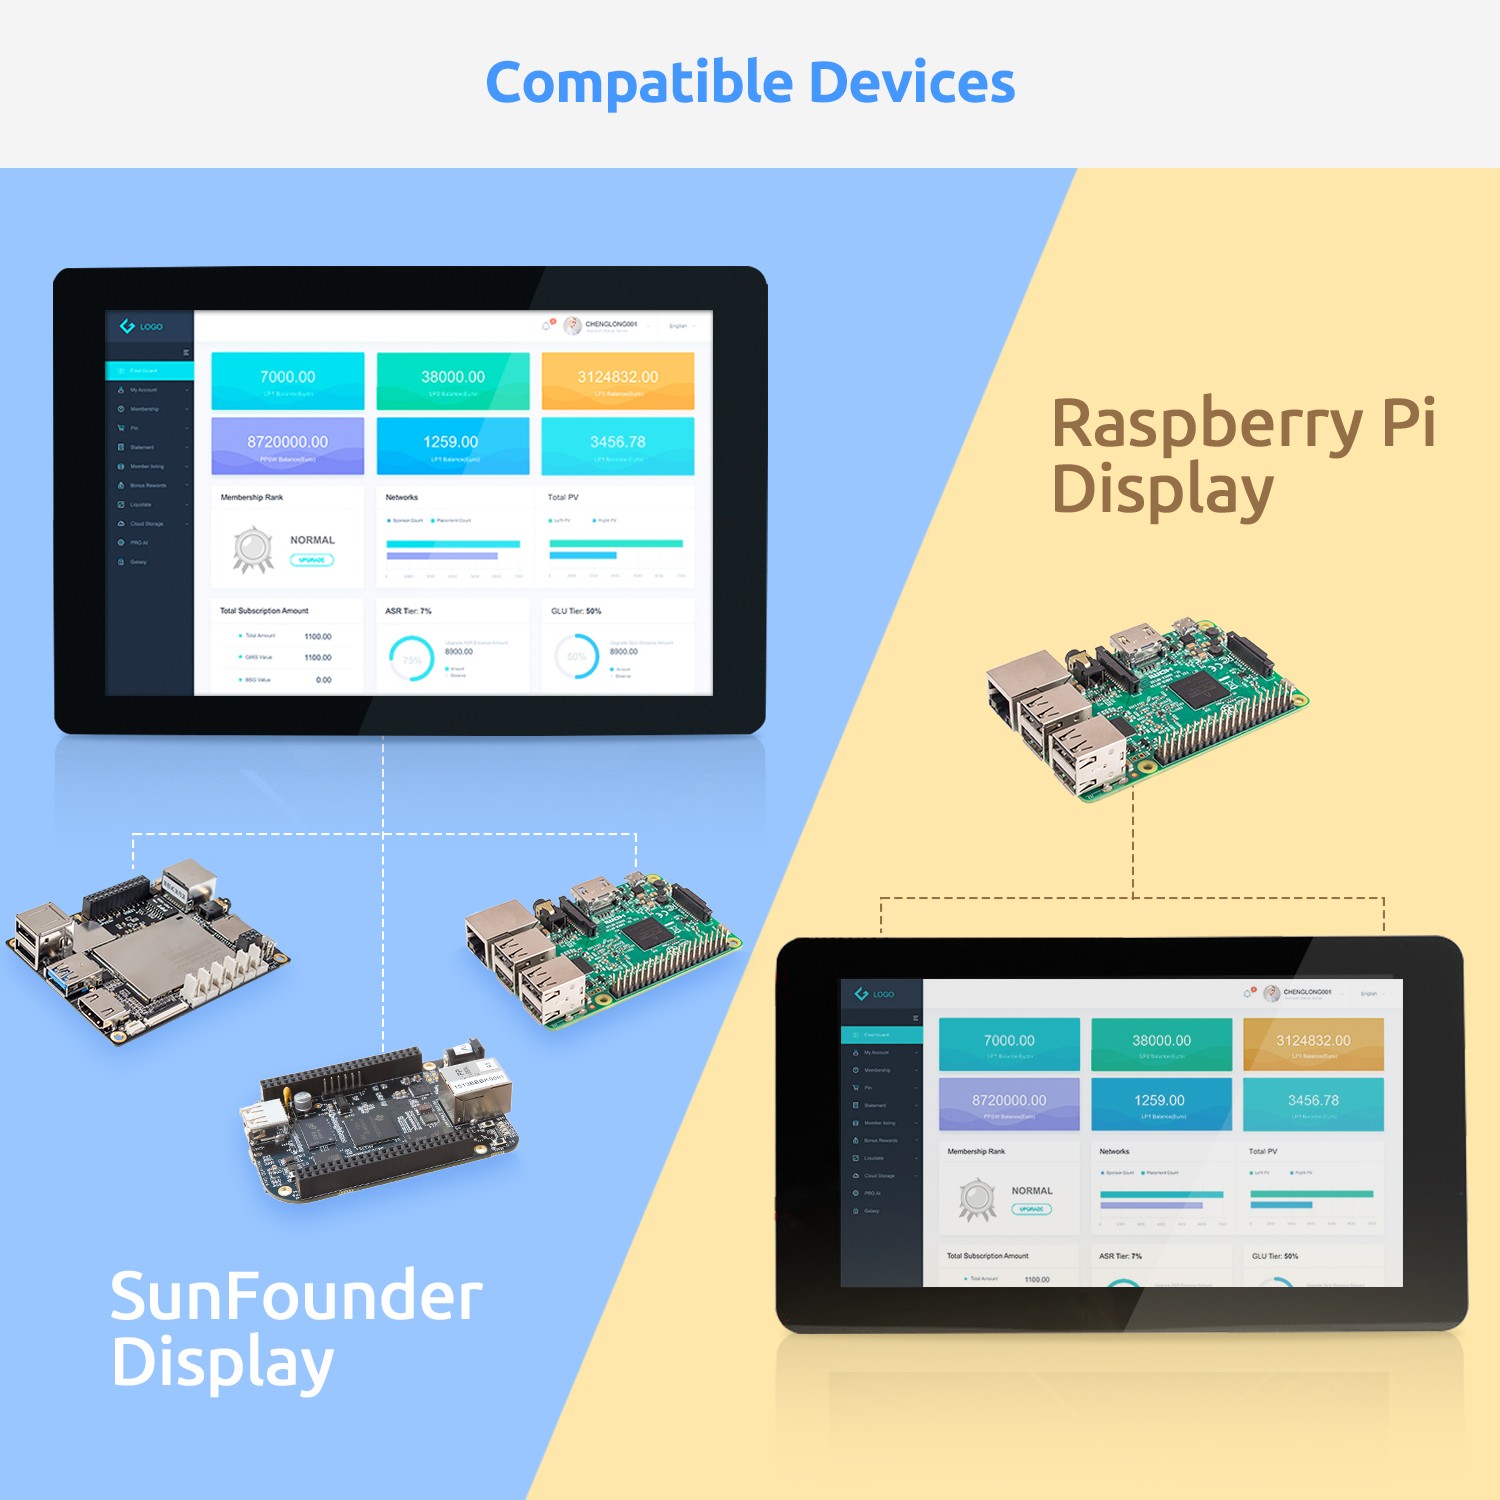 디바이스마트,오픈소스/코딩교육 > 라즈베리파이 > 디스플레이,SunFounder,라즈베리파이 10.1인치 터치스크린 LCD 모니터,1280×800 픽셀의 고해상도 10.1인치 IPS 터치스크린 LCD / 플러그앤플레이, HDMI 케이블을 사용해 제어 보드와 화면을 연결 / 가로9.8 x 폭3 x 세로7.24(인치) / 12V 1.5A 아답터 별매(미포함), 라즈베리파이 보드 별매(미포함)